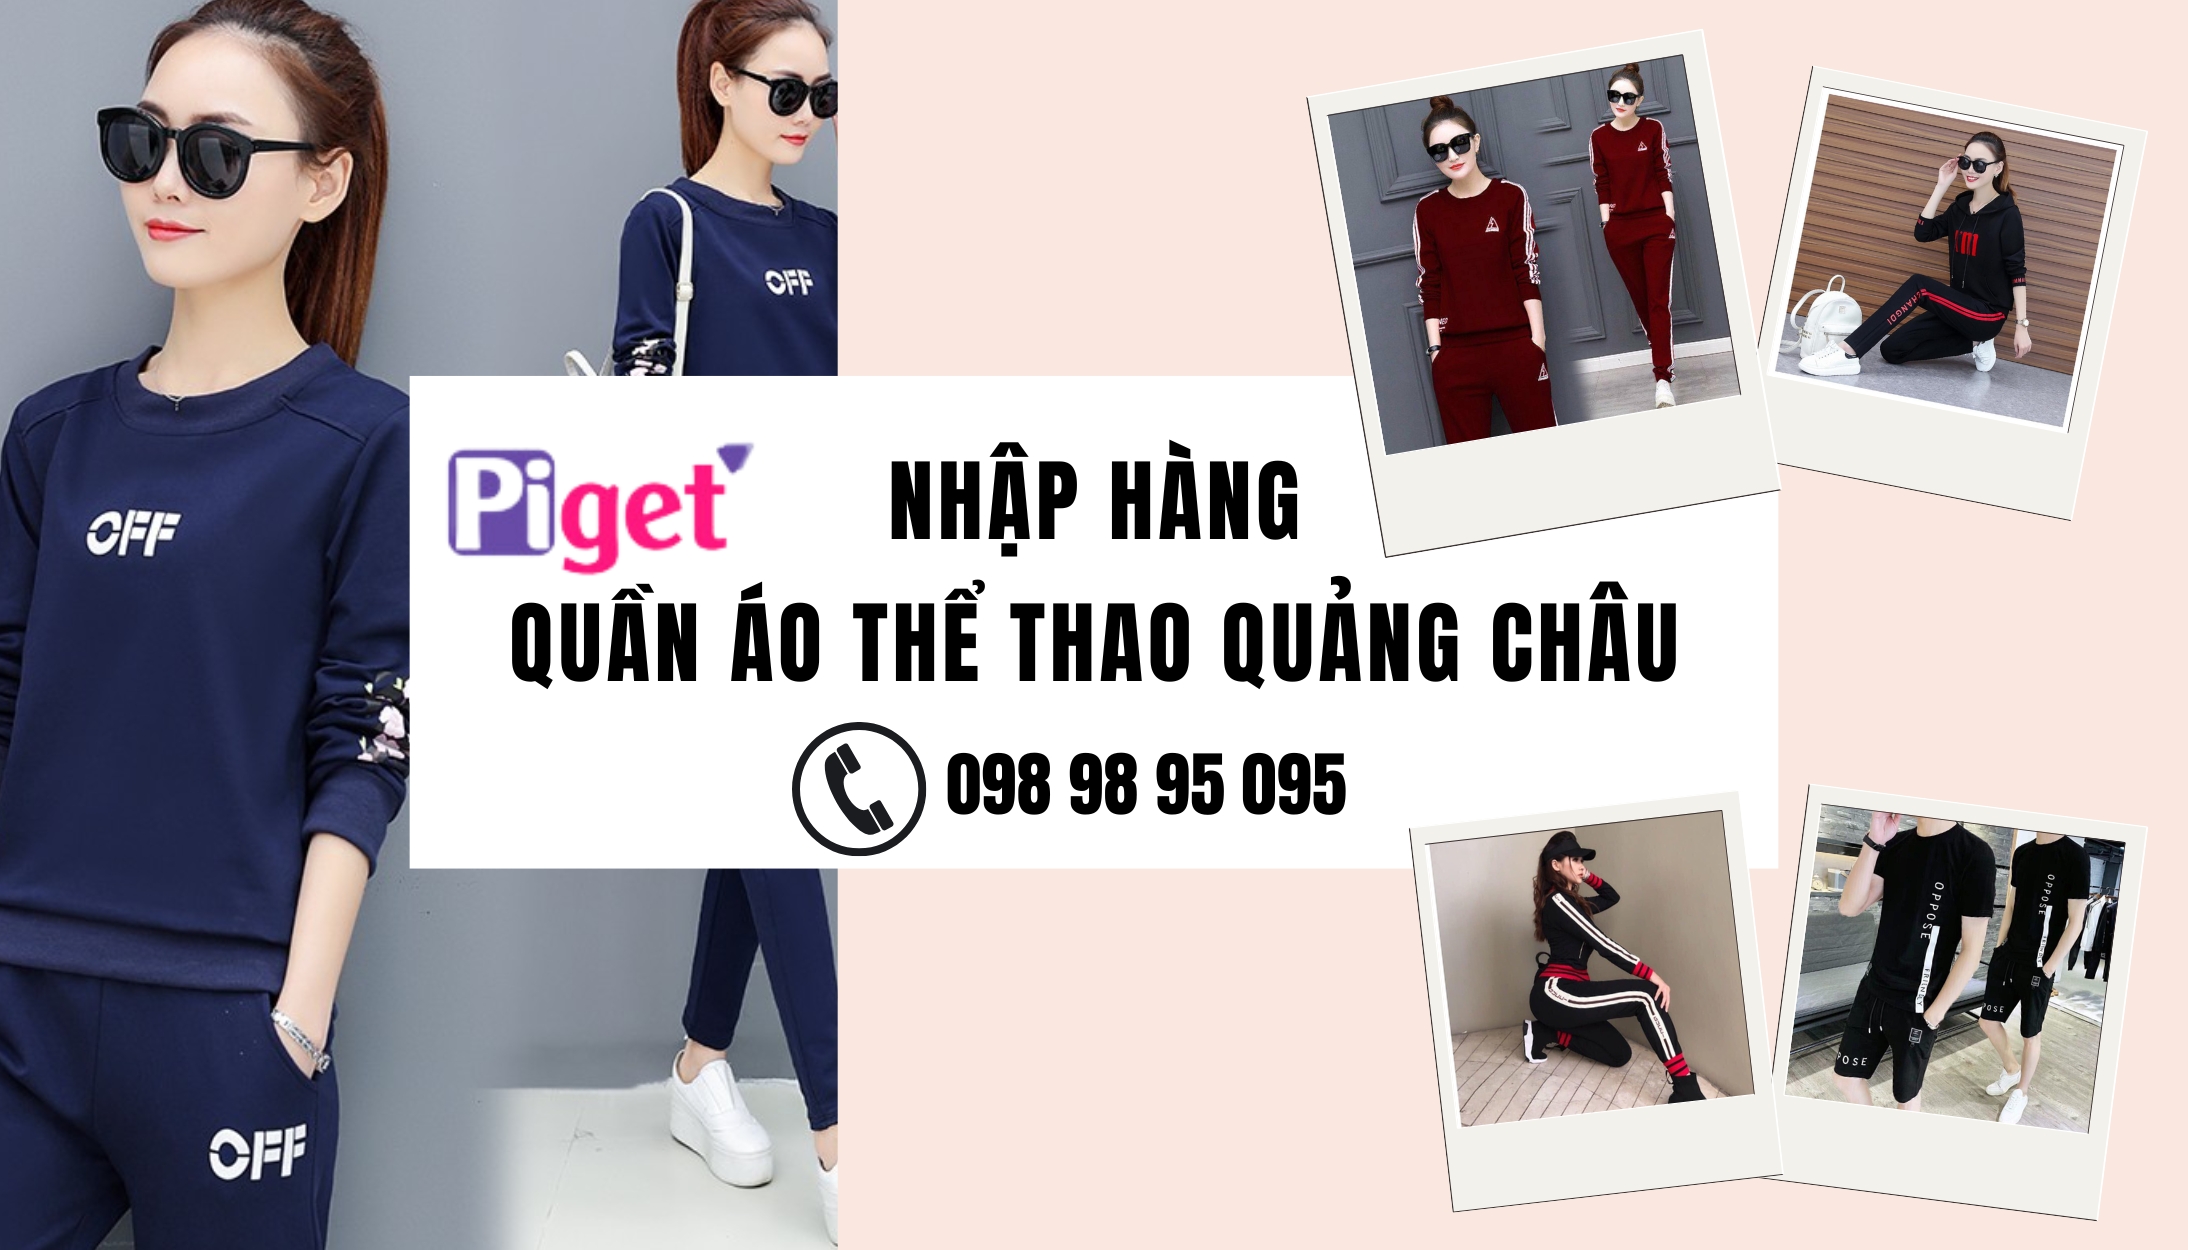 Nhập hàng quần áo thể thao Quảng Châu qua Piget